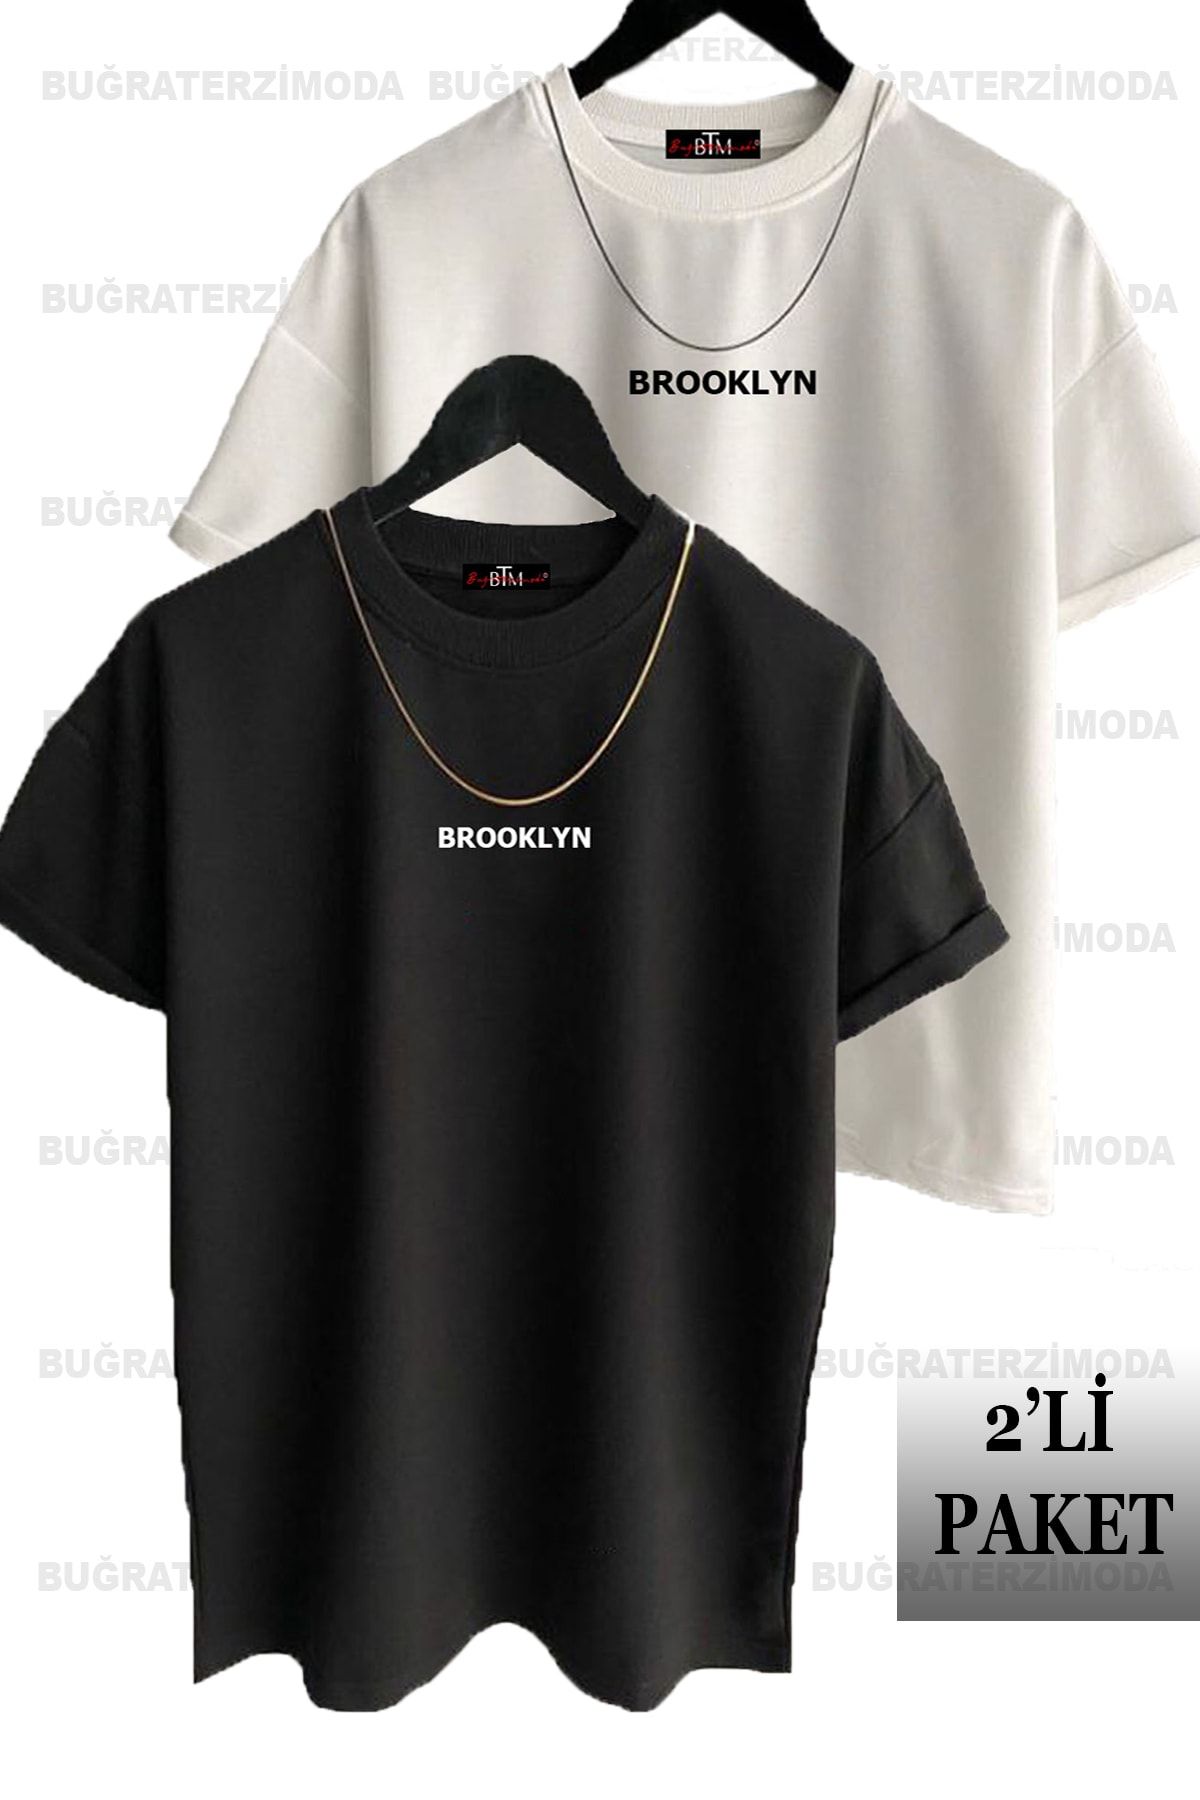 Buğraterzimoda Brooklyn Baskılı Unisex Siyah-Beyaz 2'li Oversize T-Shirt Paketi